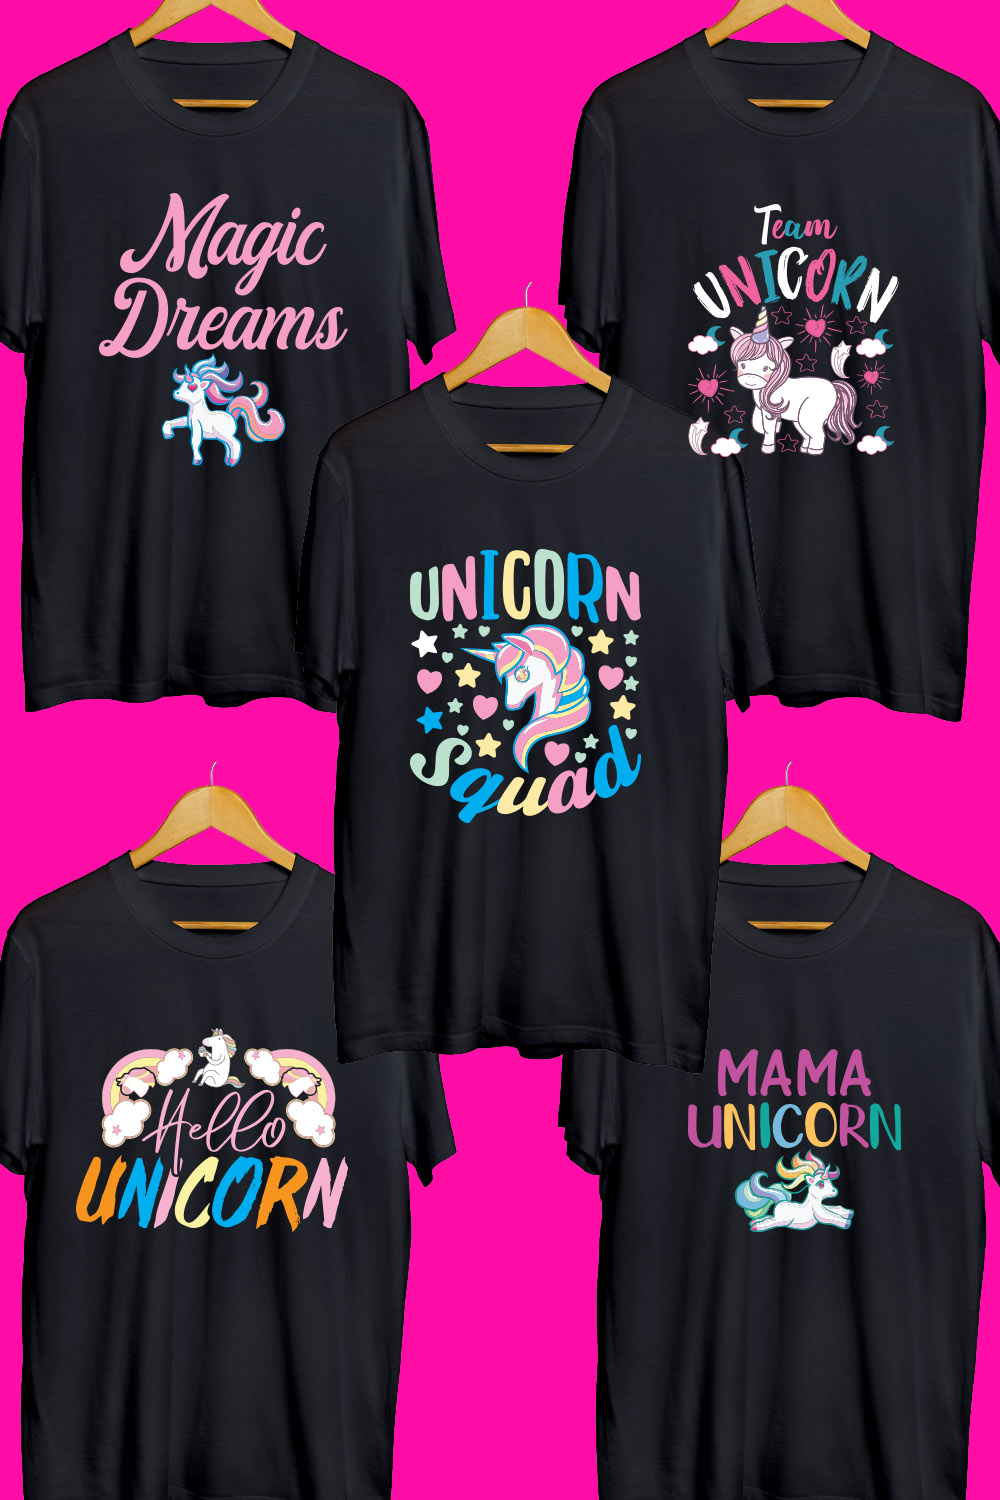 Unicorn T Shirt Designs Bundle pinterest preview image.